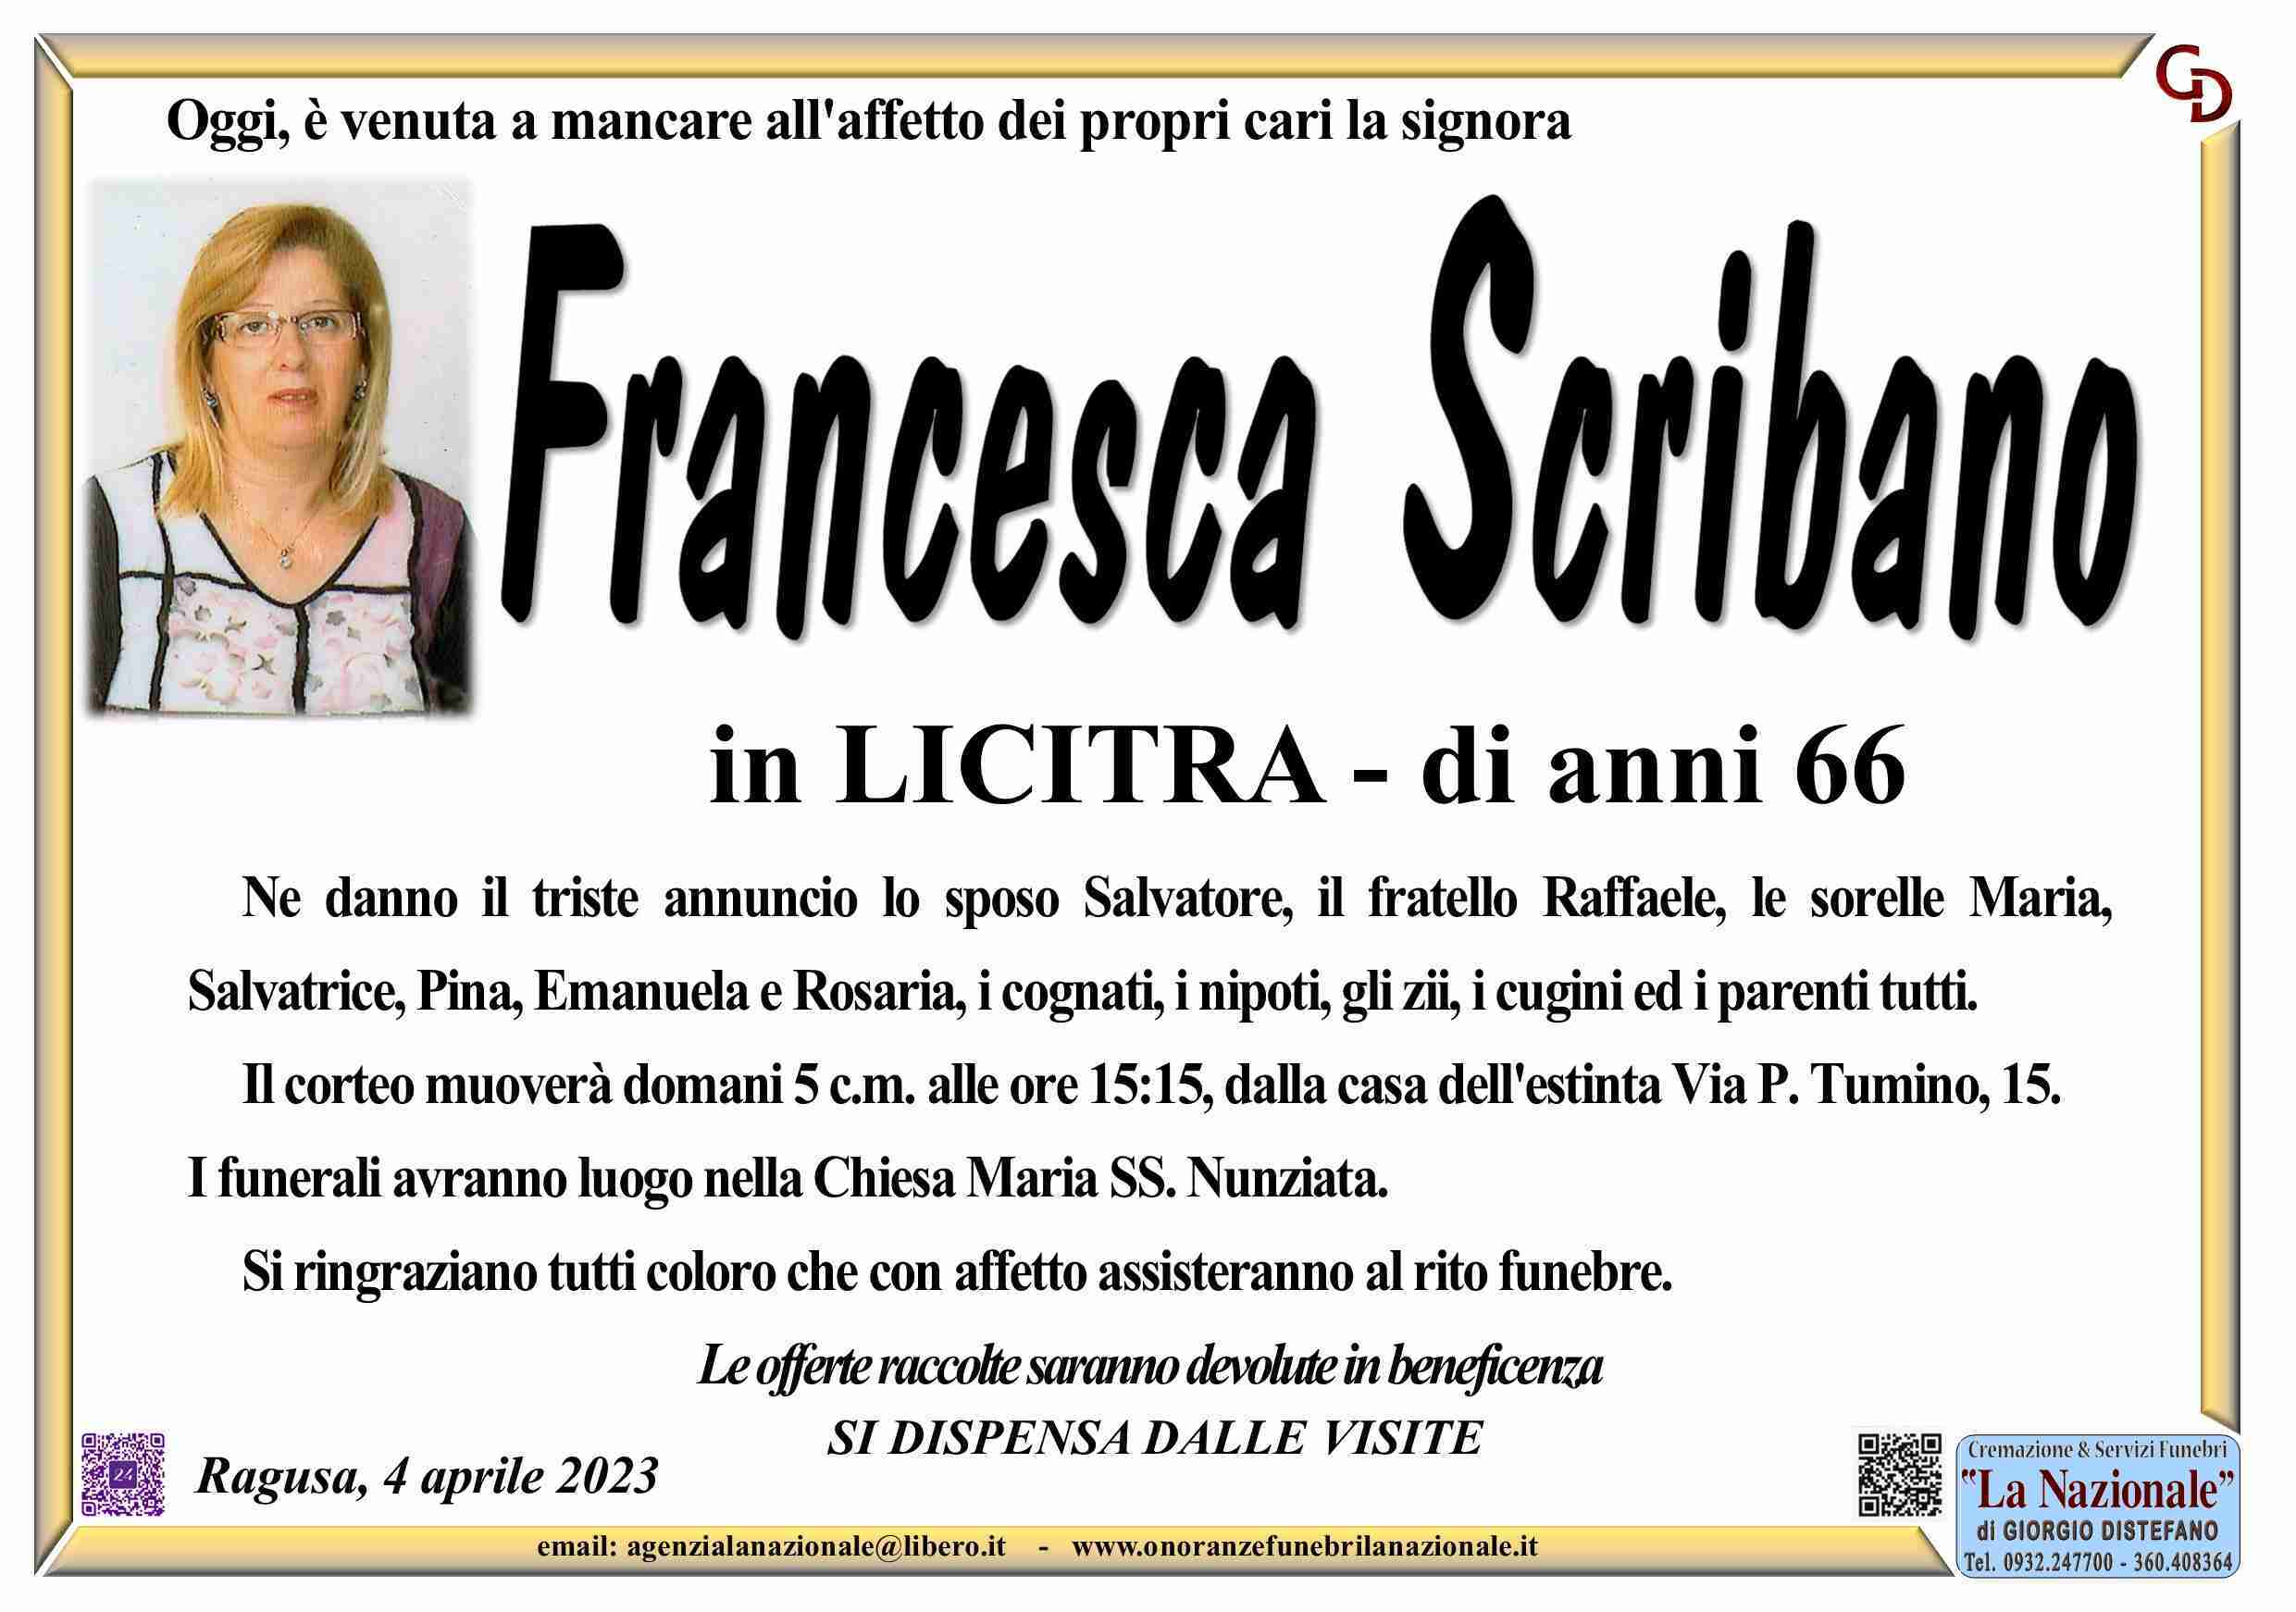 Francesca Scribano